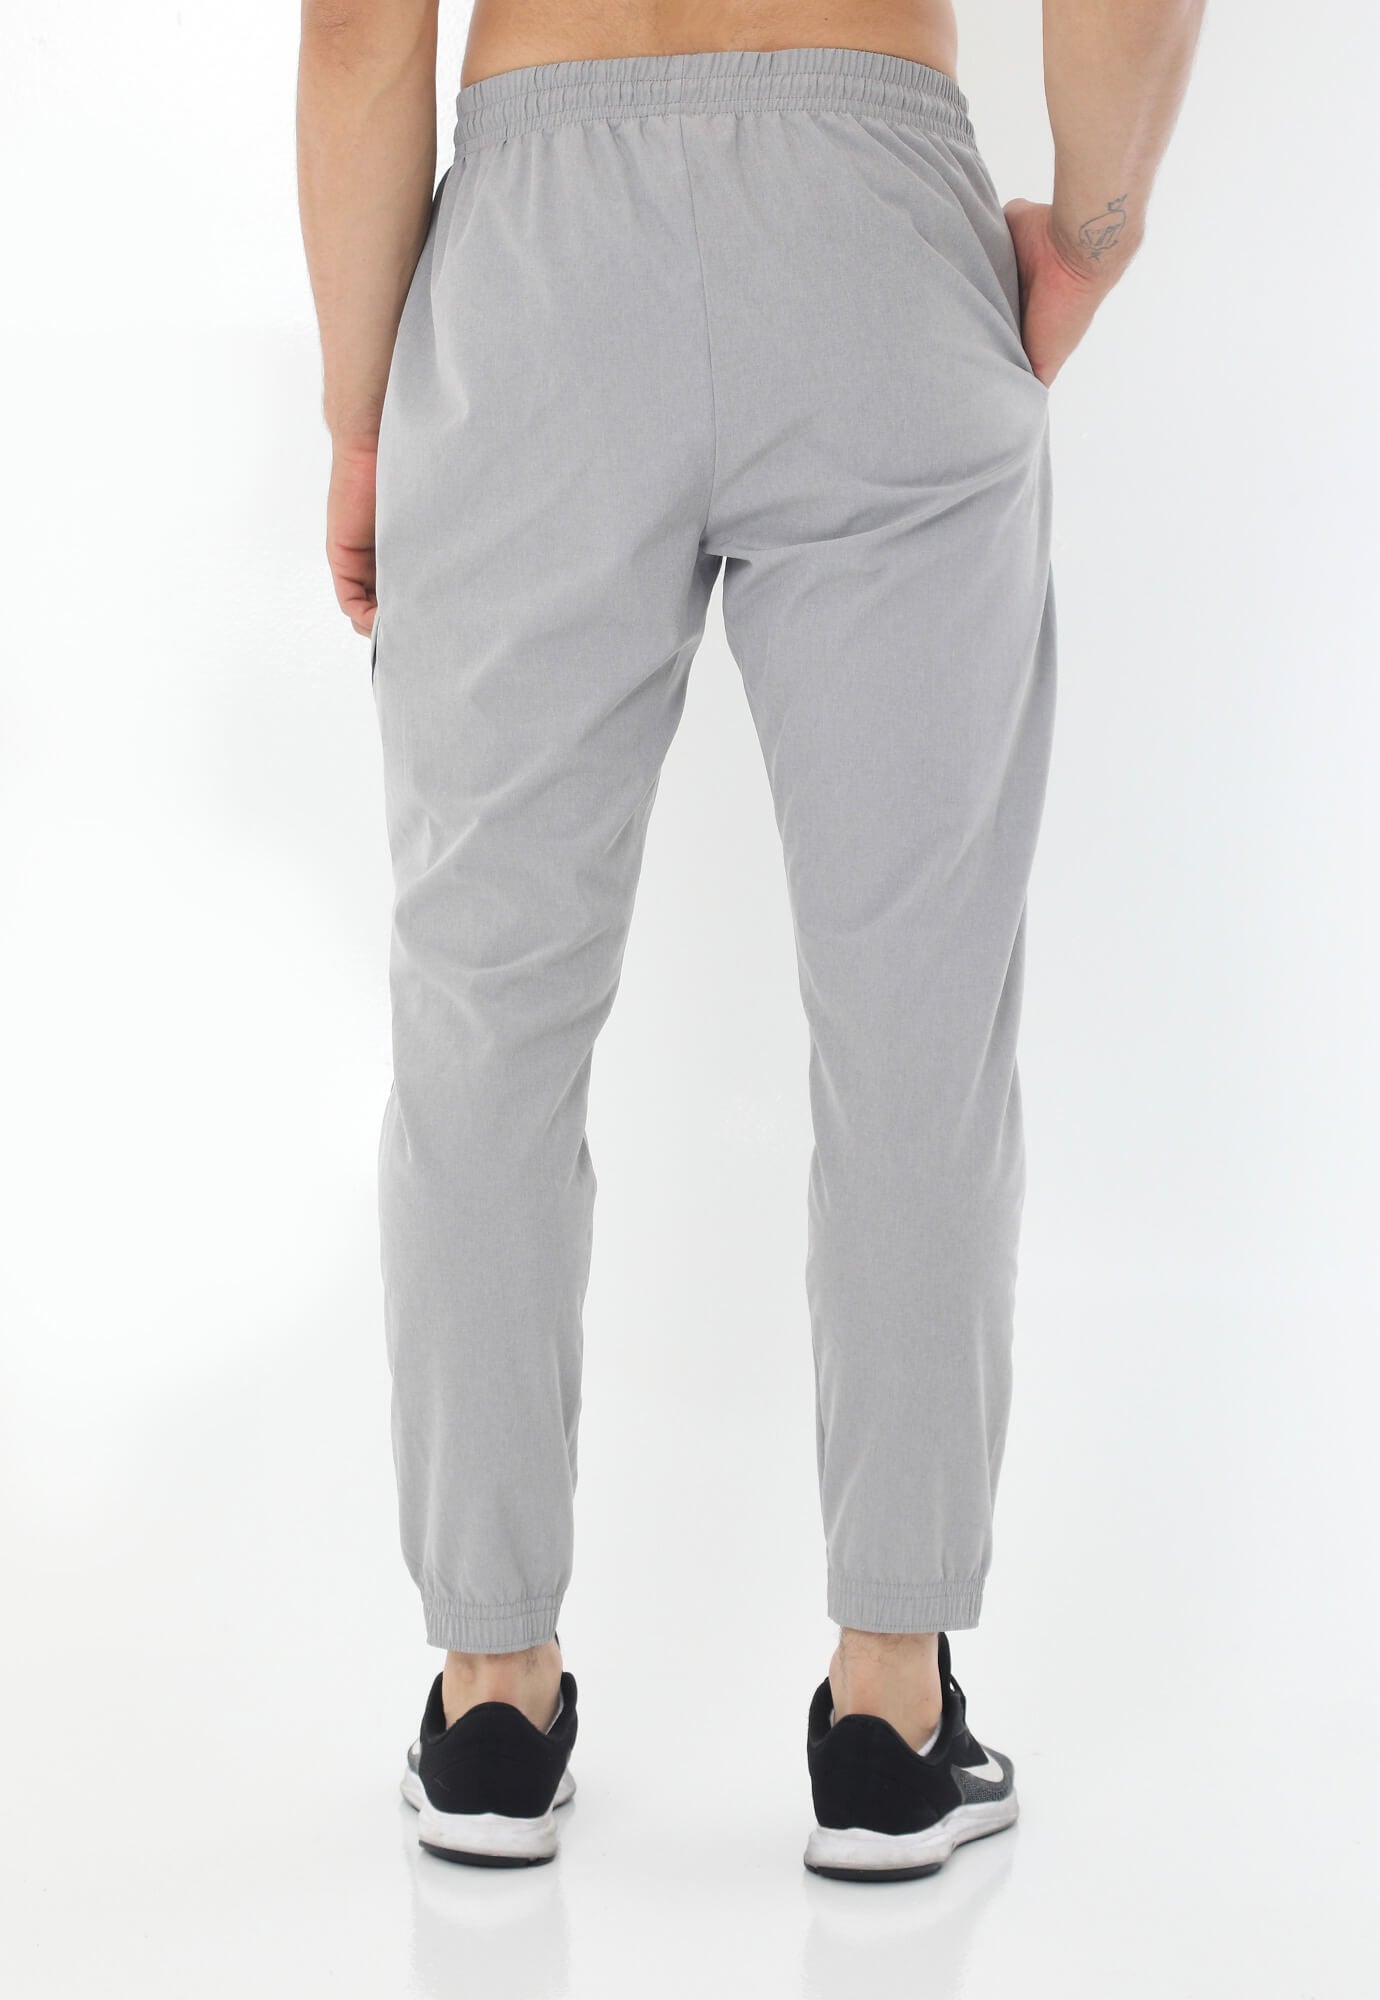 Pantalón deportivo gris tipo jogger con silueta ajustada con pretina y cordón ajustable para hombre